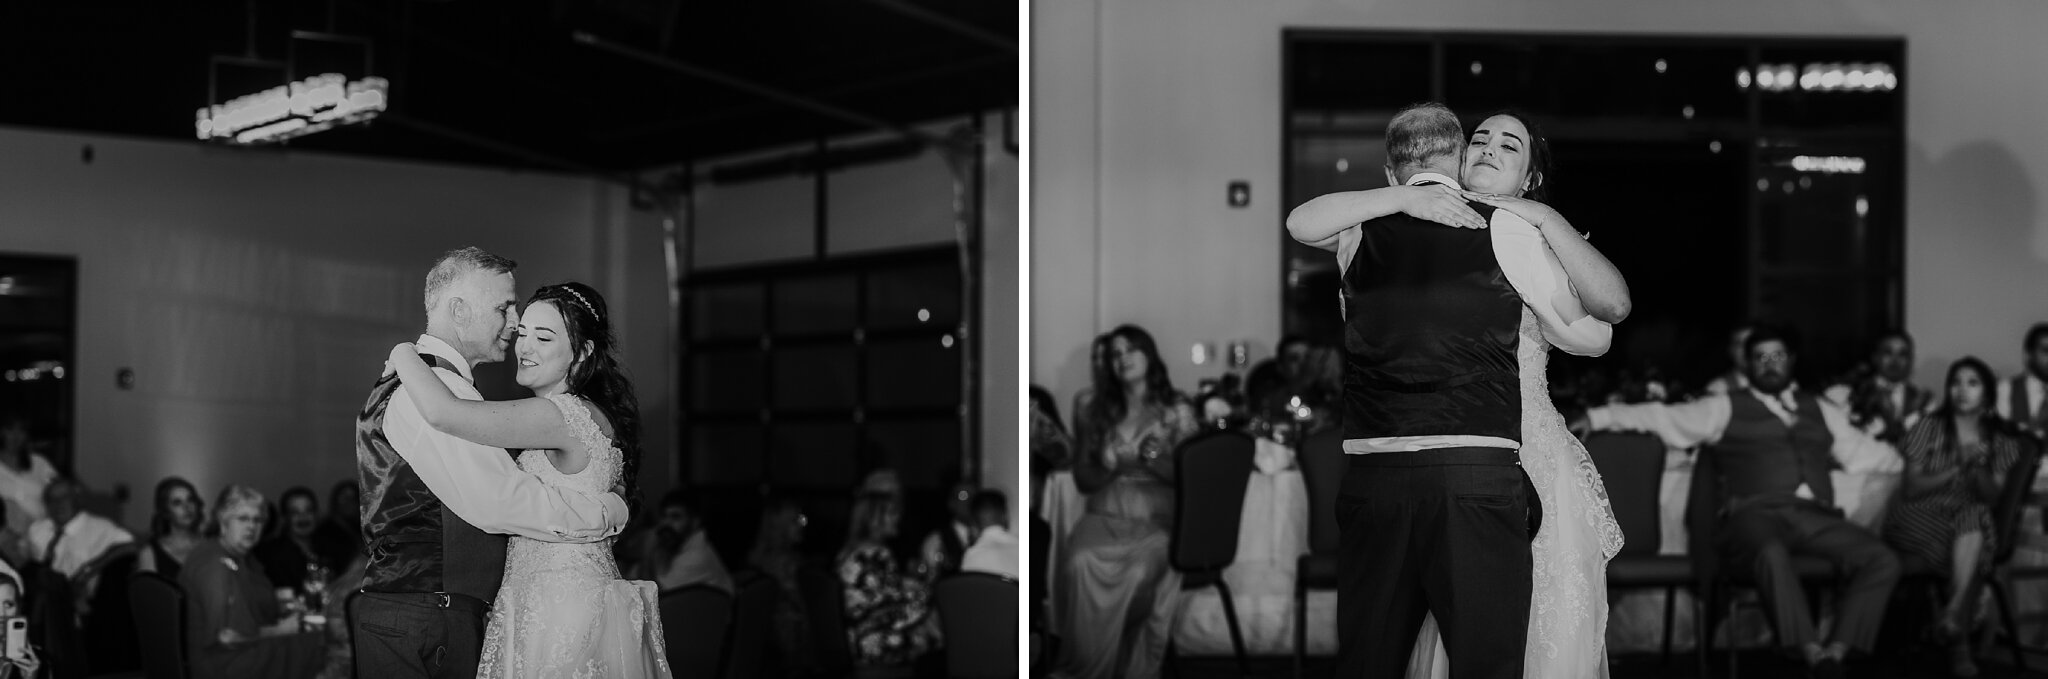 Alicia+lucia+photography+-+albuquerque+wedding+photographer+-+santa+fe+wedding+photography+-+new+mexico+wedding+photographer+-+new+mexico+wedding+-+hyatt+tamaya+wedding+-+washington+bride+-+fall+wedding+-+albuquerque+wedding_0118.jpg